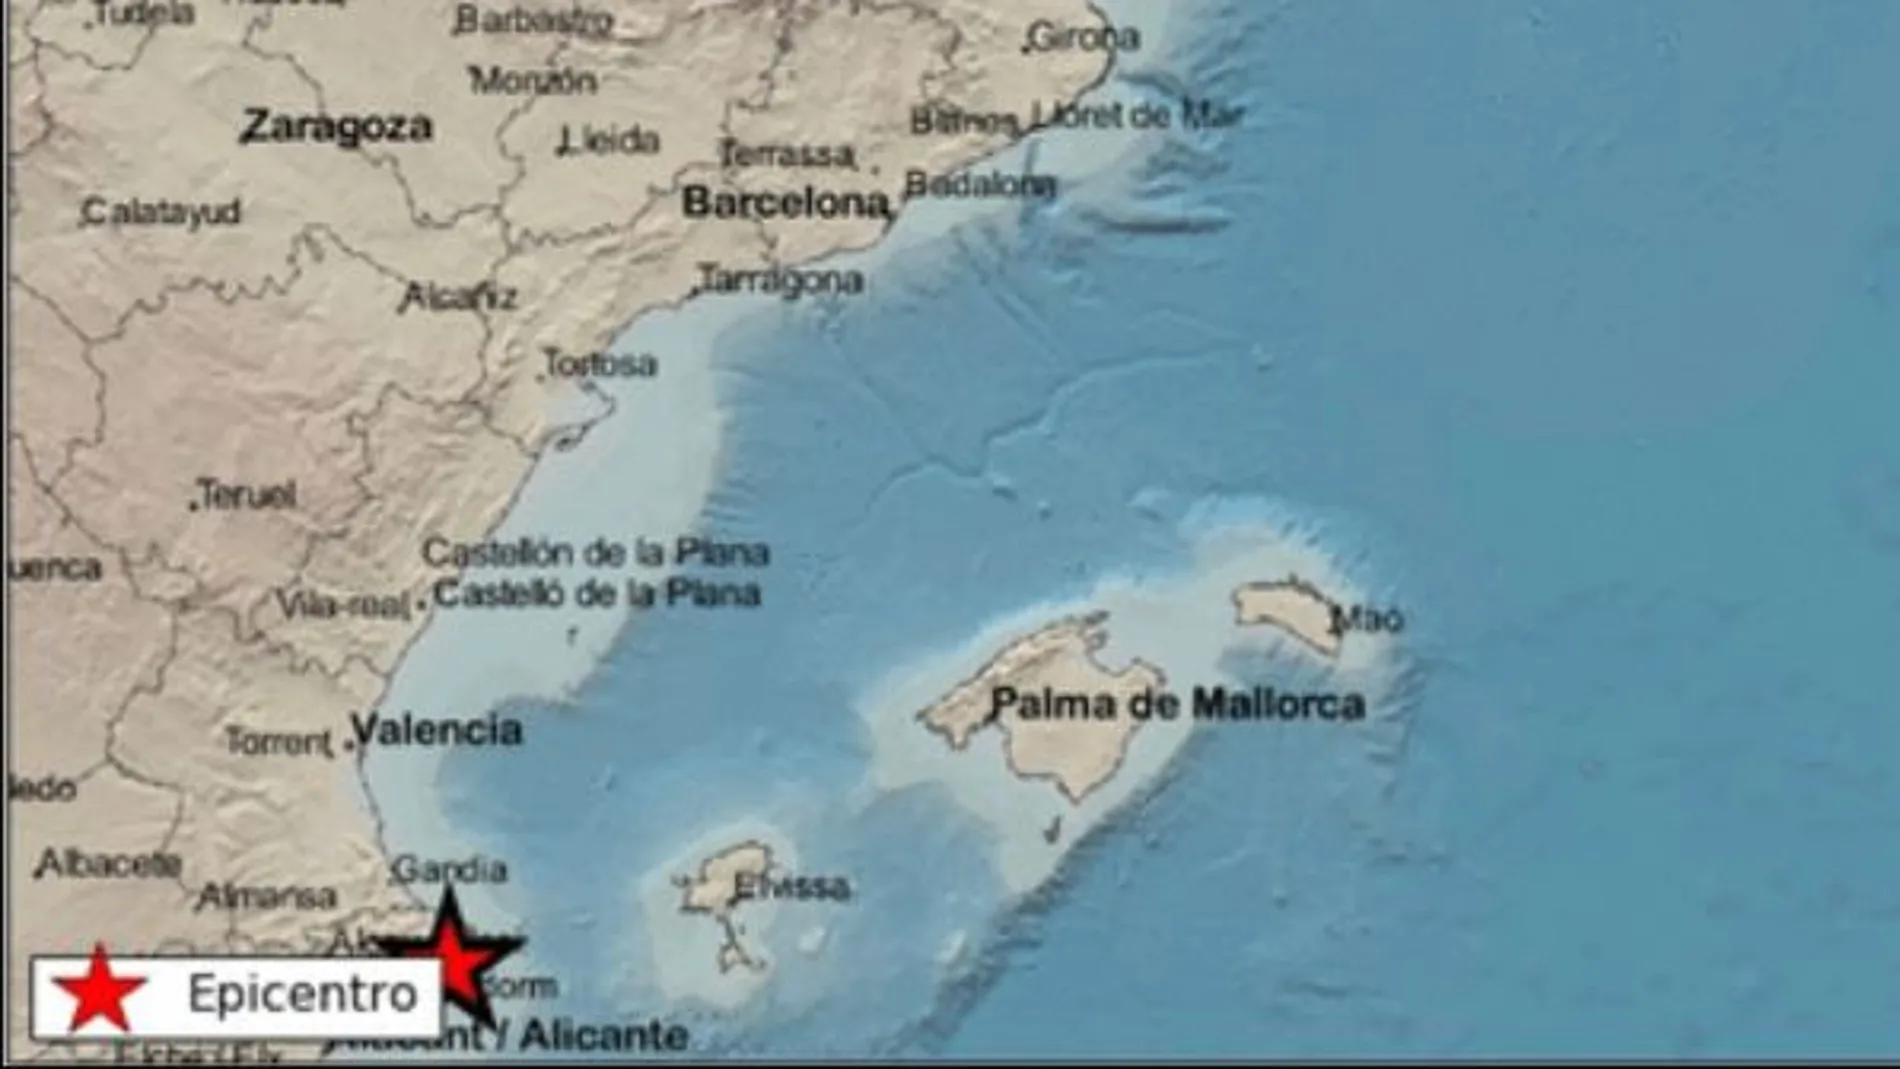 Localizado el epicentro del terremoto en Benissa